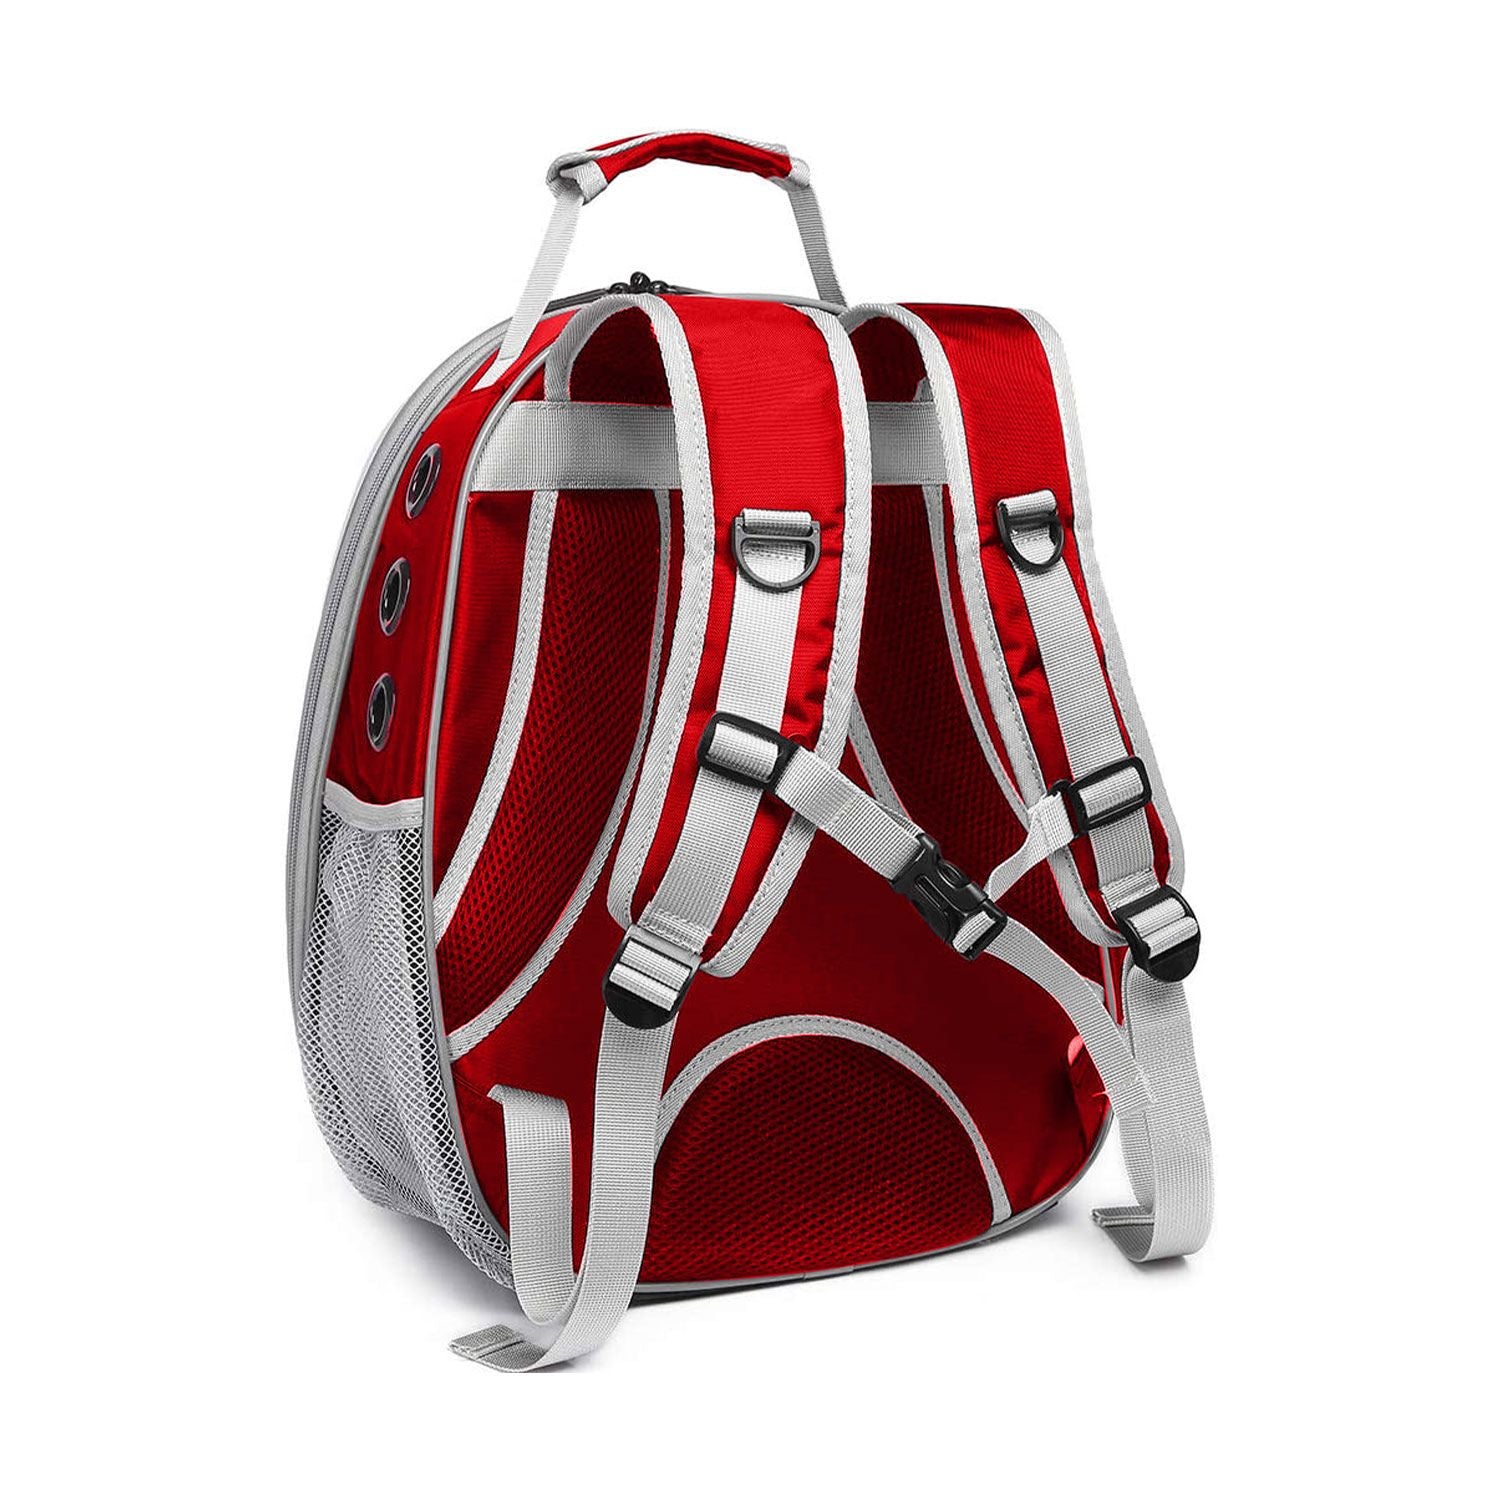 Space Capsule Backpack - Model 2 (Red)